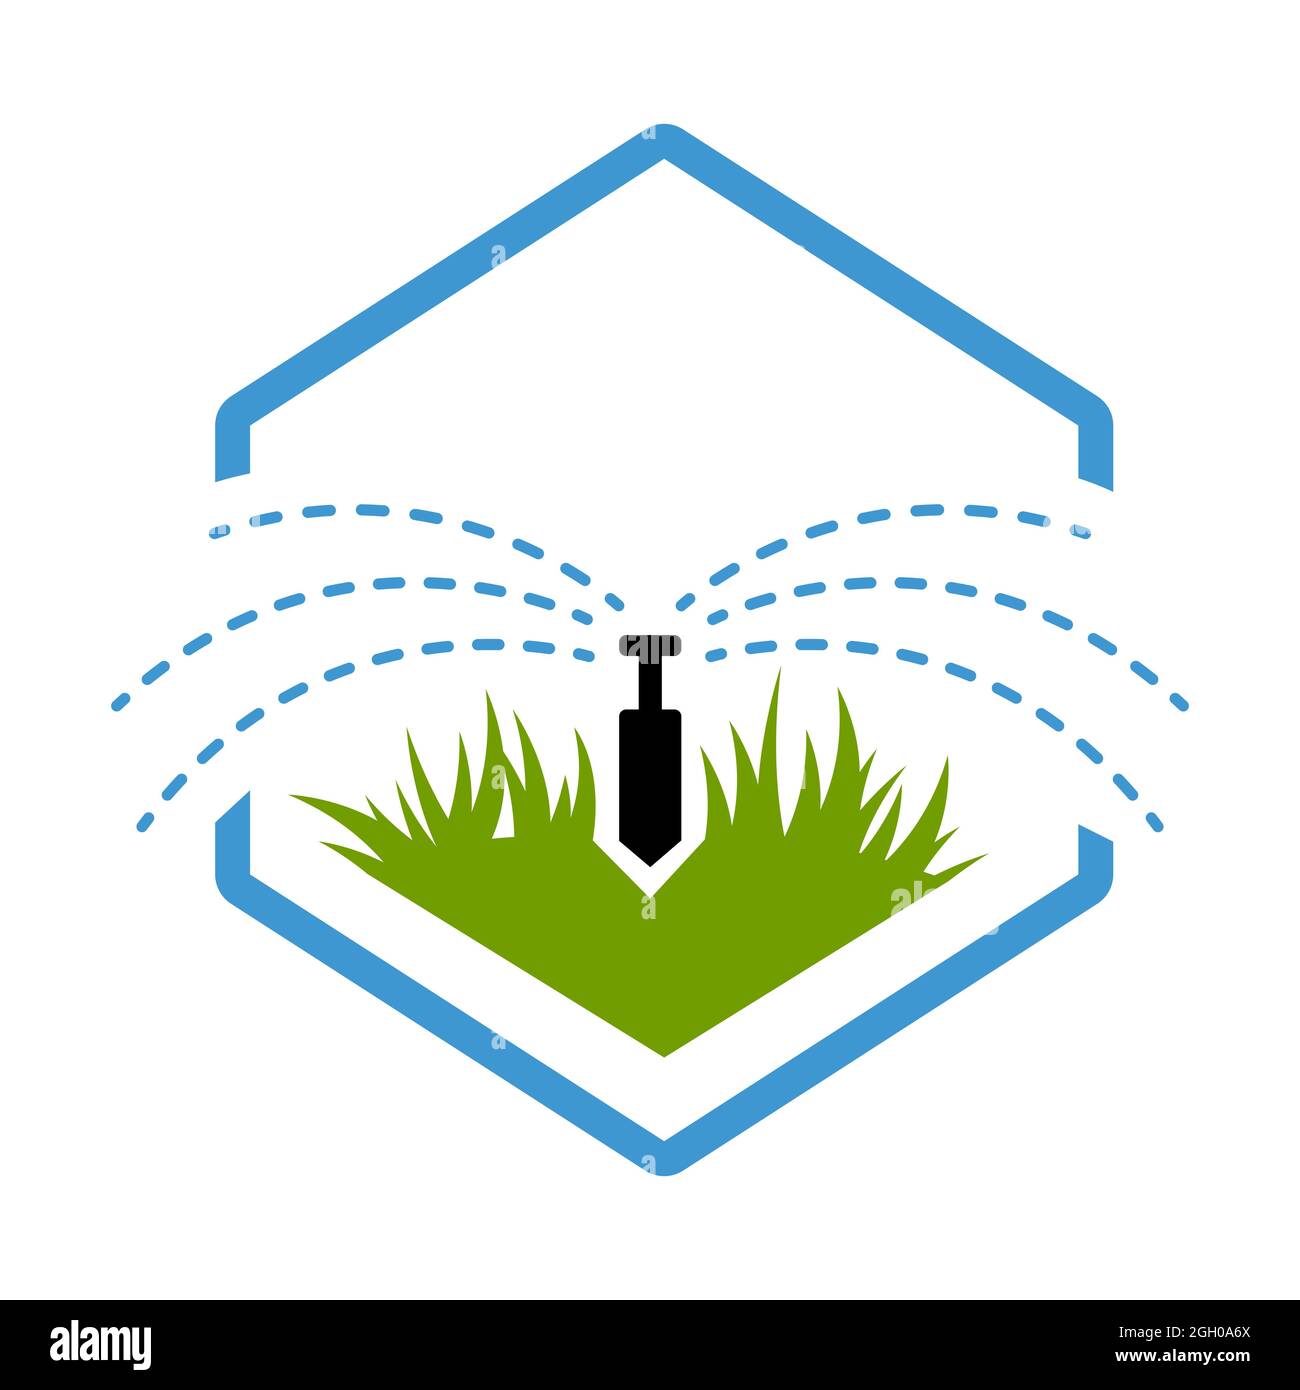 Bewässerungssystem Teile und Tropfbewässerung Sprinkler Bewässerungssystem in einem Tropfen Landschaft Vektor-Design und Abbildung Stock Vektor